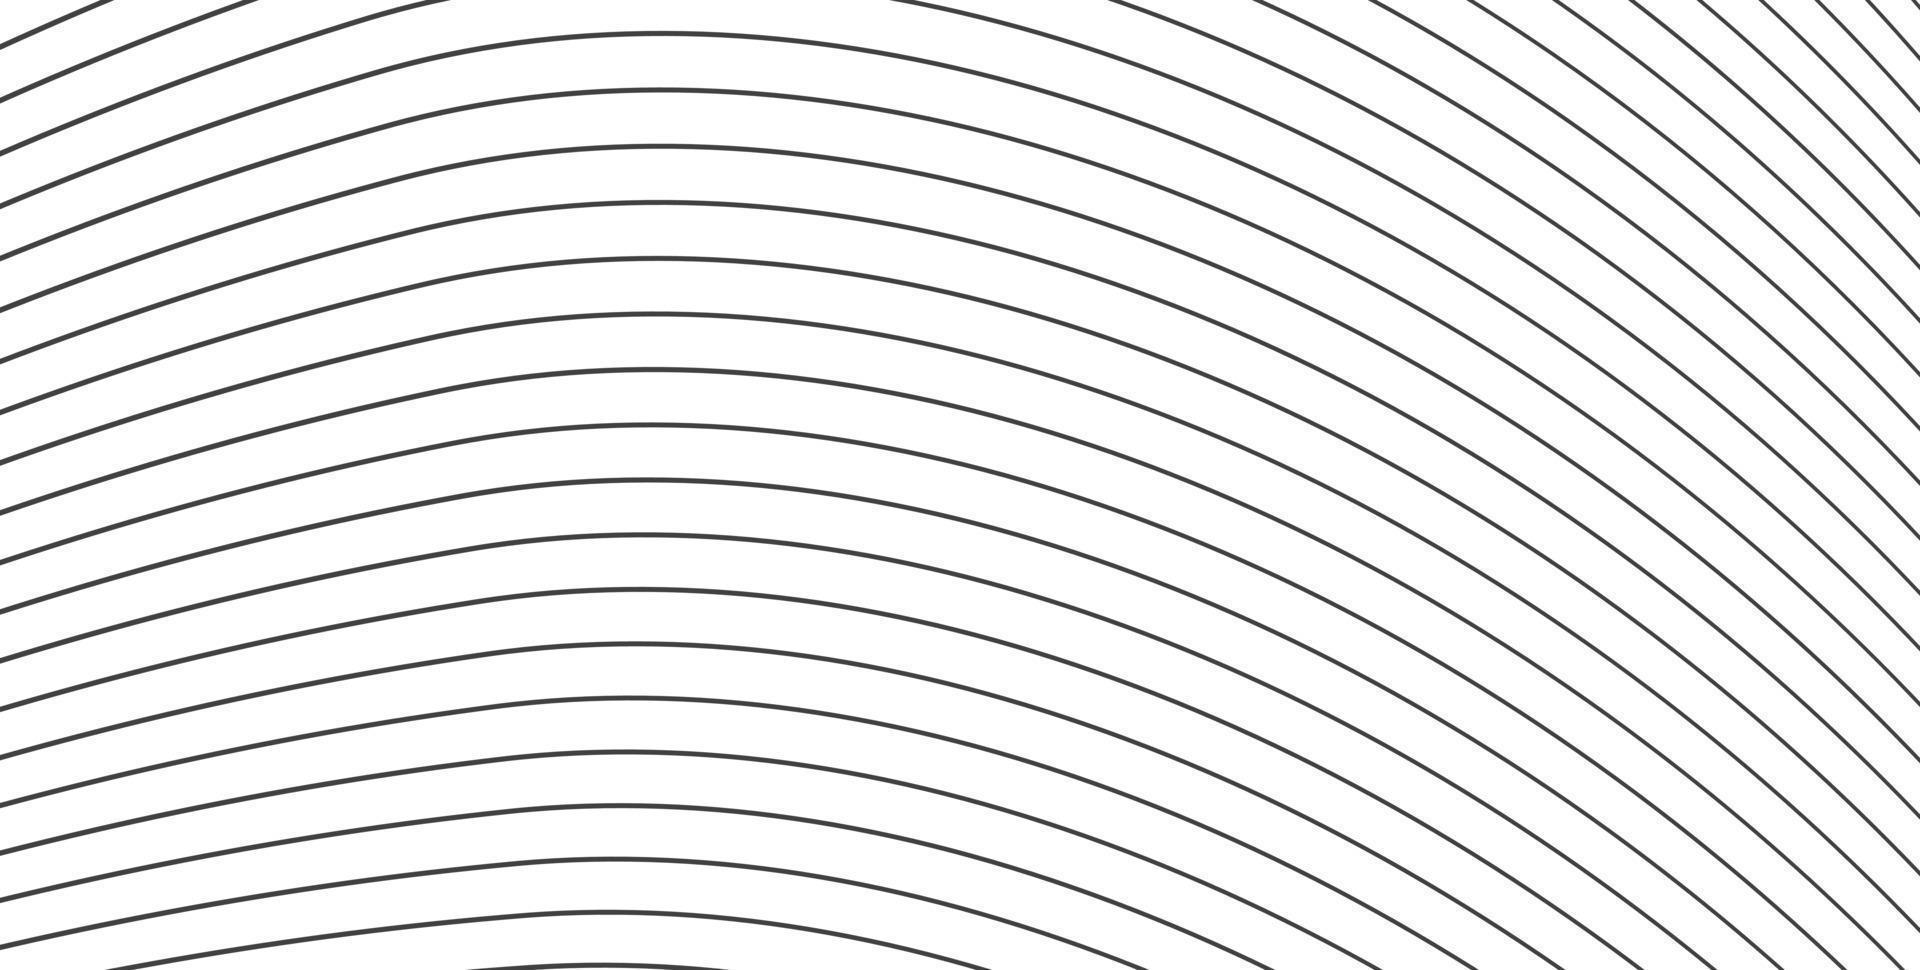 randmönster. vit tunn linje bakgrund. tunna mörka linjer på vitt. sömlösa mörka tunna linjer. topografisk linje. runda linjer abstrakt vektor